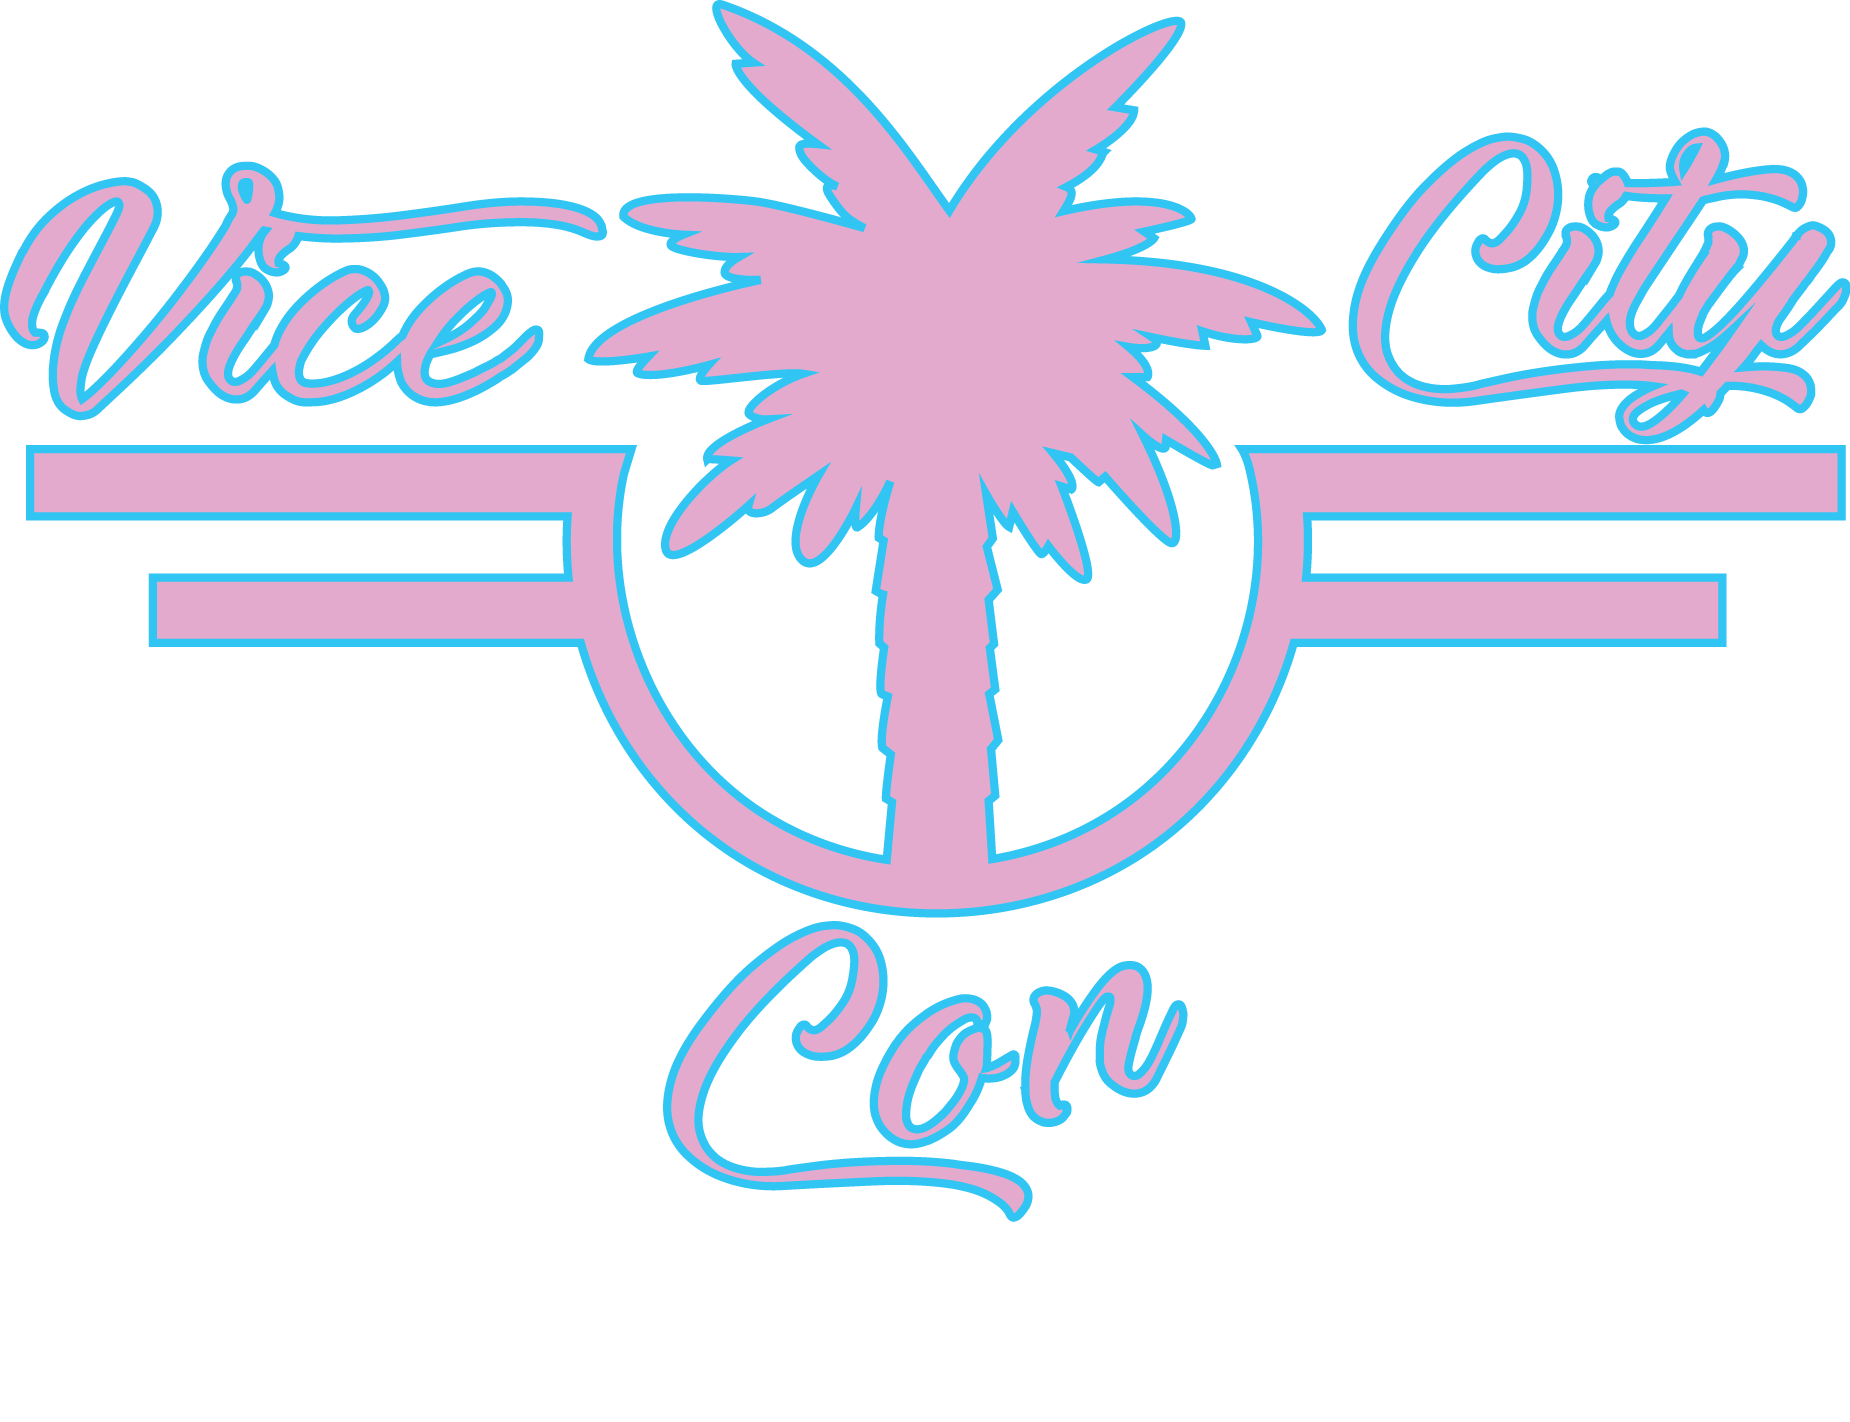 Vice City Con